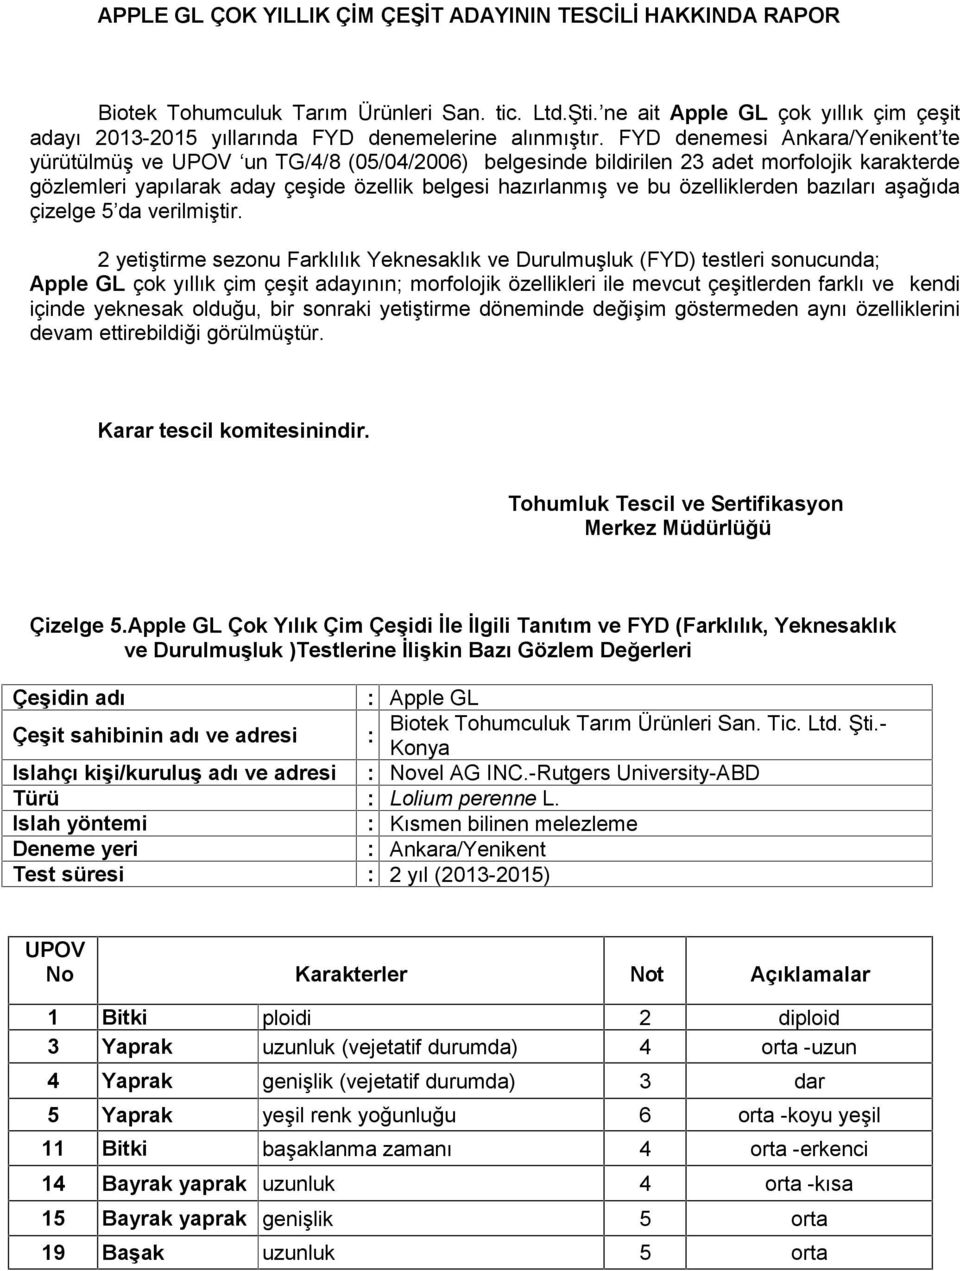 FYD denemesi Ankara/Yenikent te yürütülmüş ve un TG/4/8 (05/04/2006) belgesinde bildirilen 23 adet morfolojik karakterde gözlemleri yapılarak aday çeşide özellik belgesi hazırlanmış ve bu